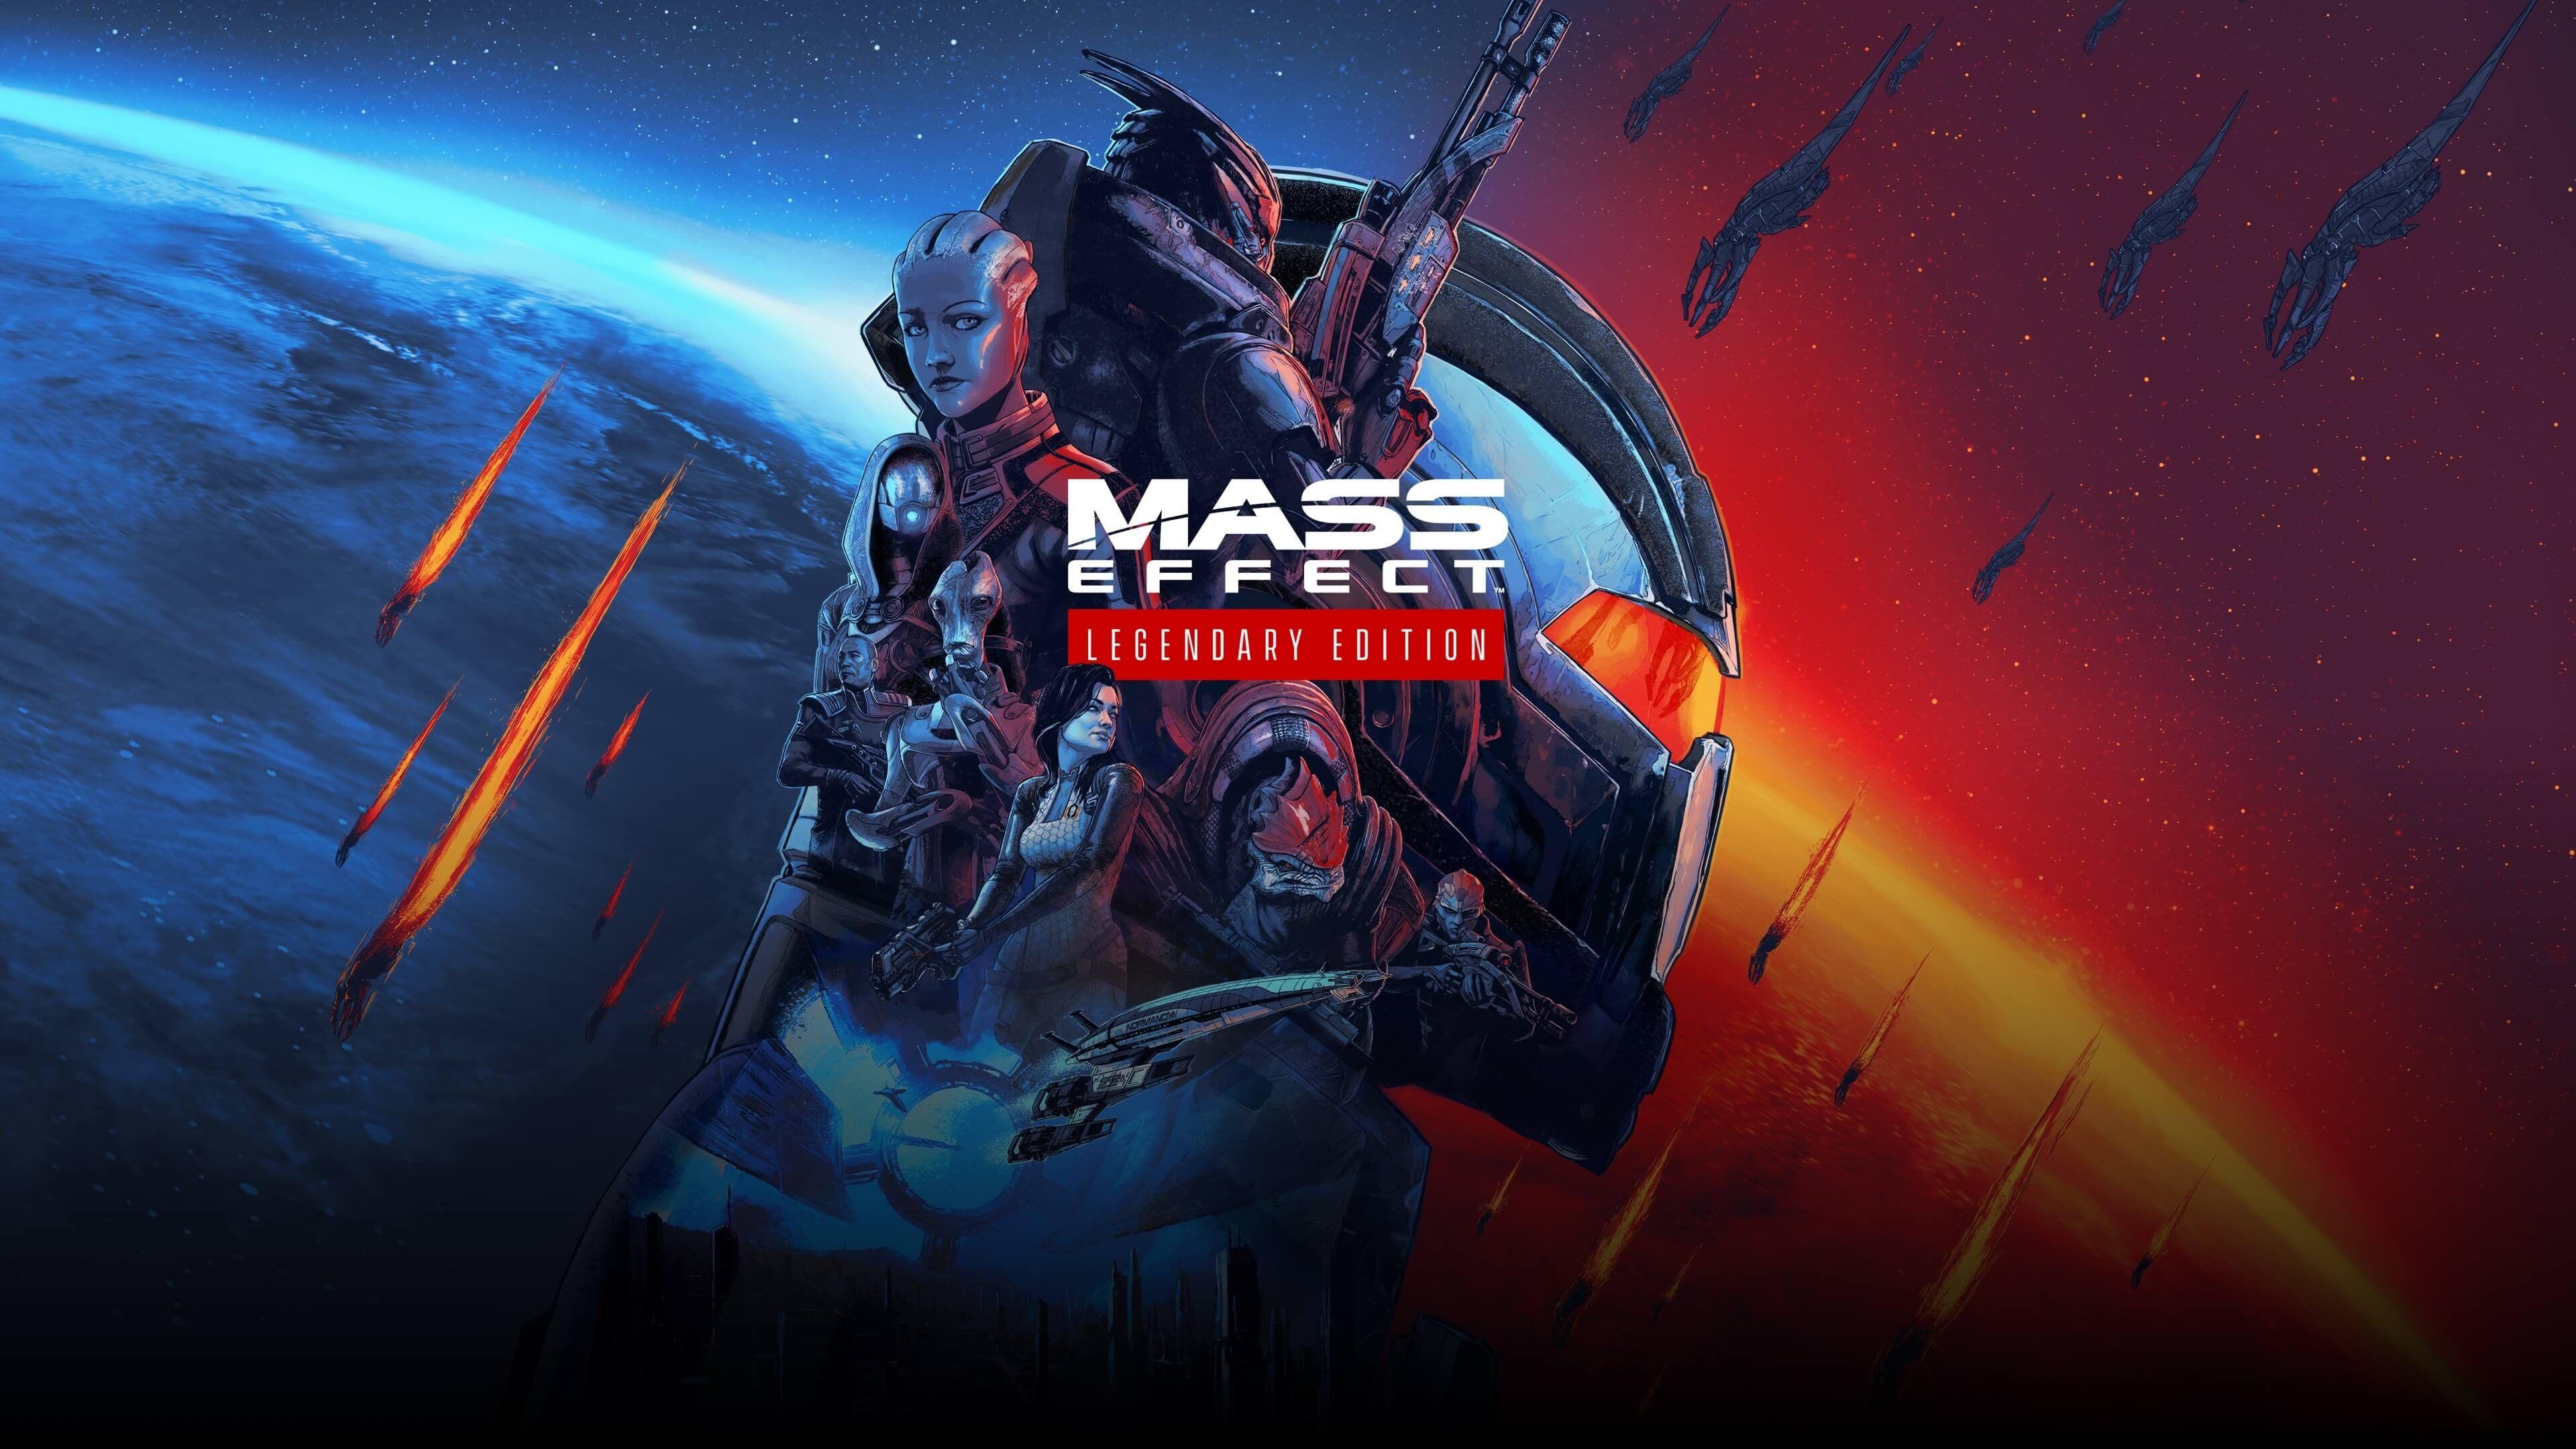 3840 x 2160 · jpeg - Mass Effect Legendary Edition - 4K Keyart Wallpaper : masseffect